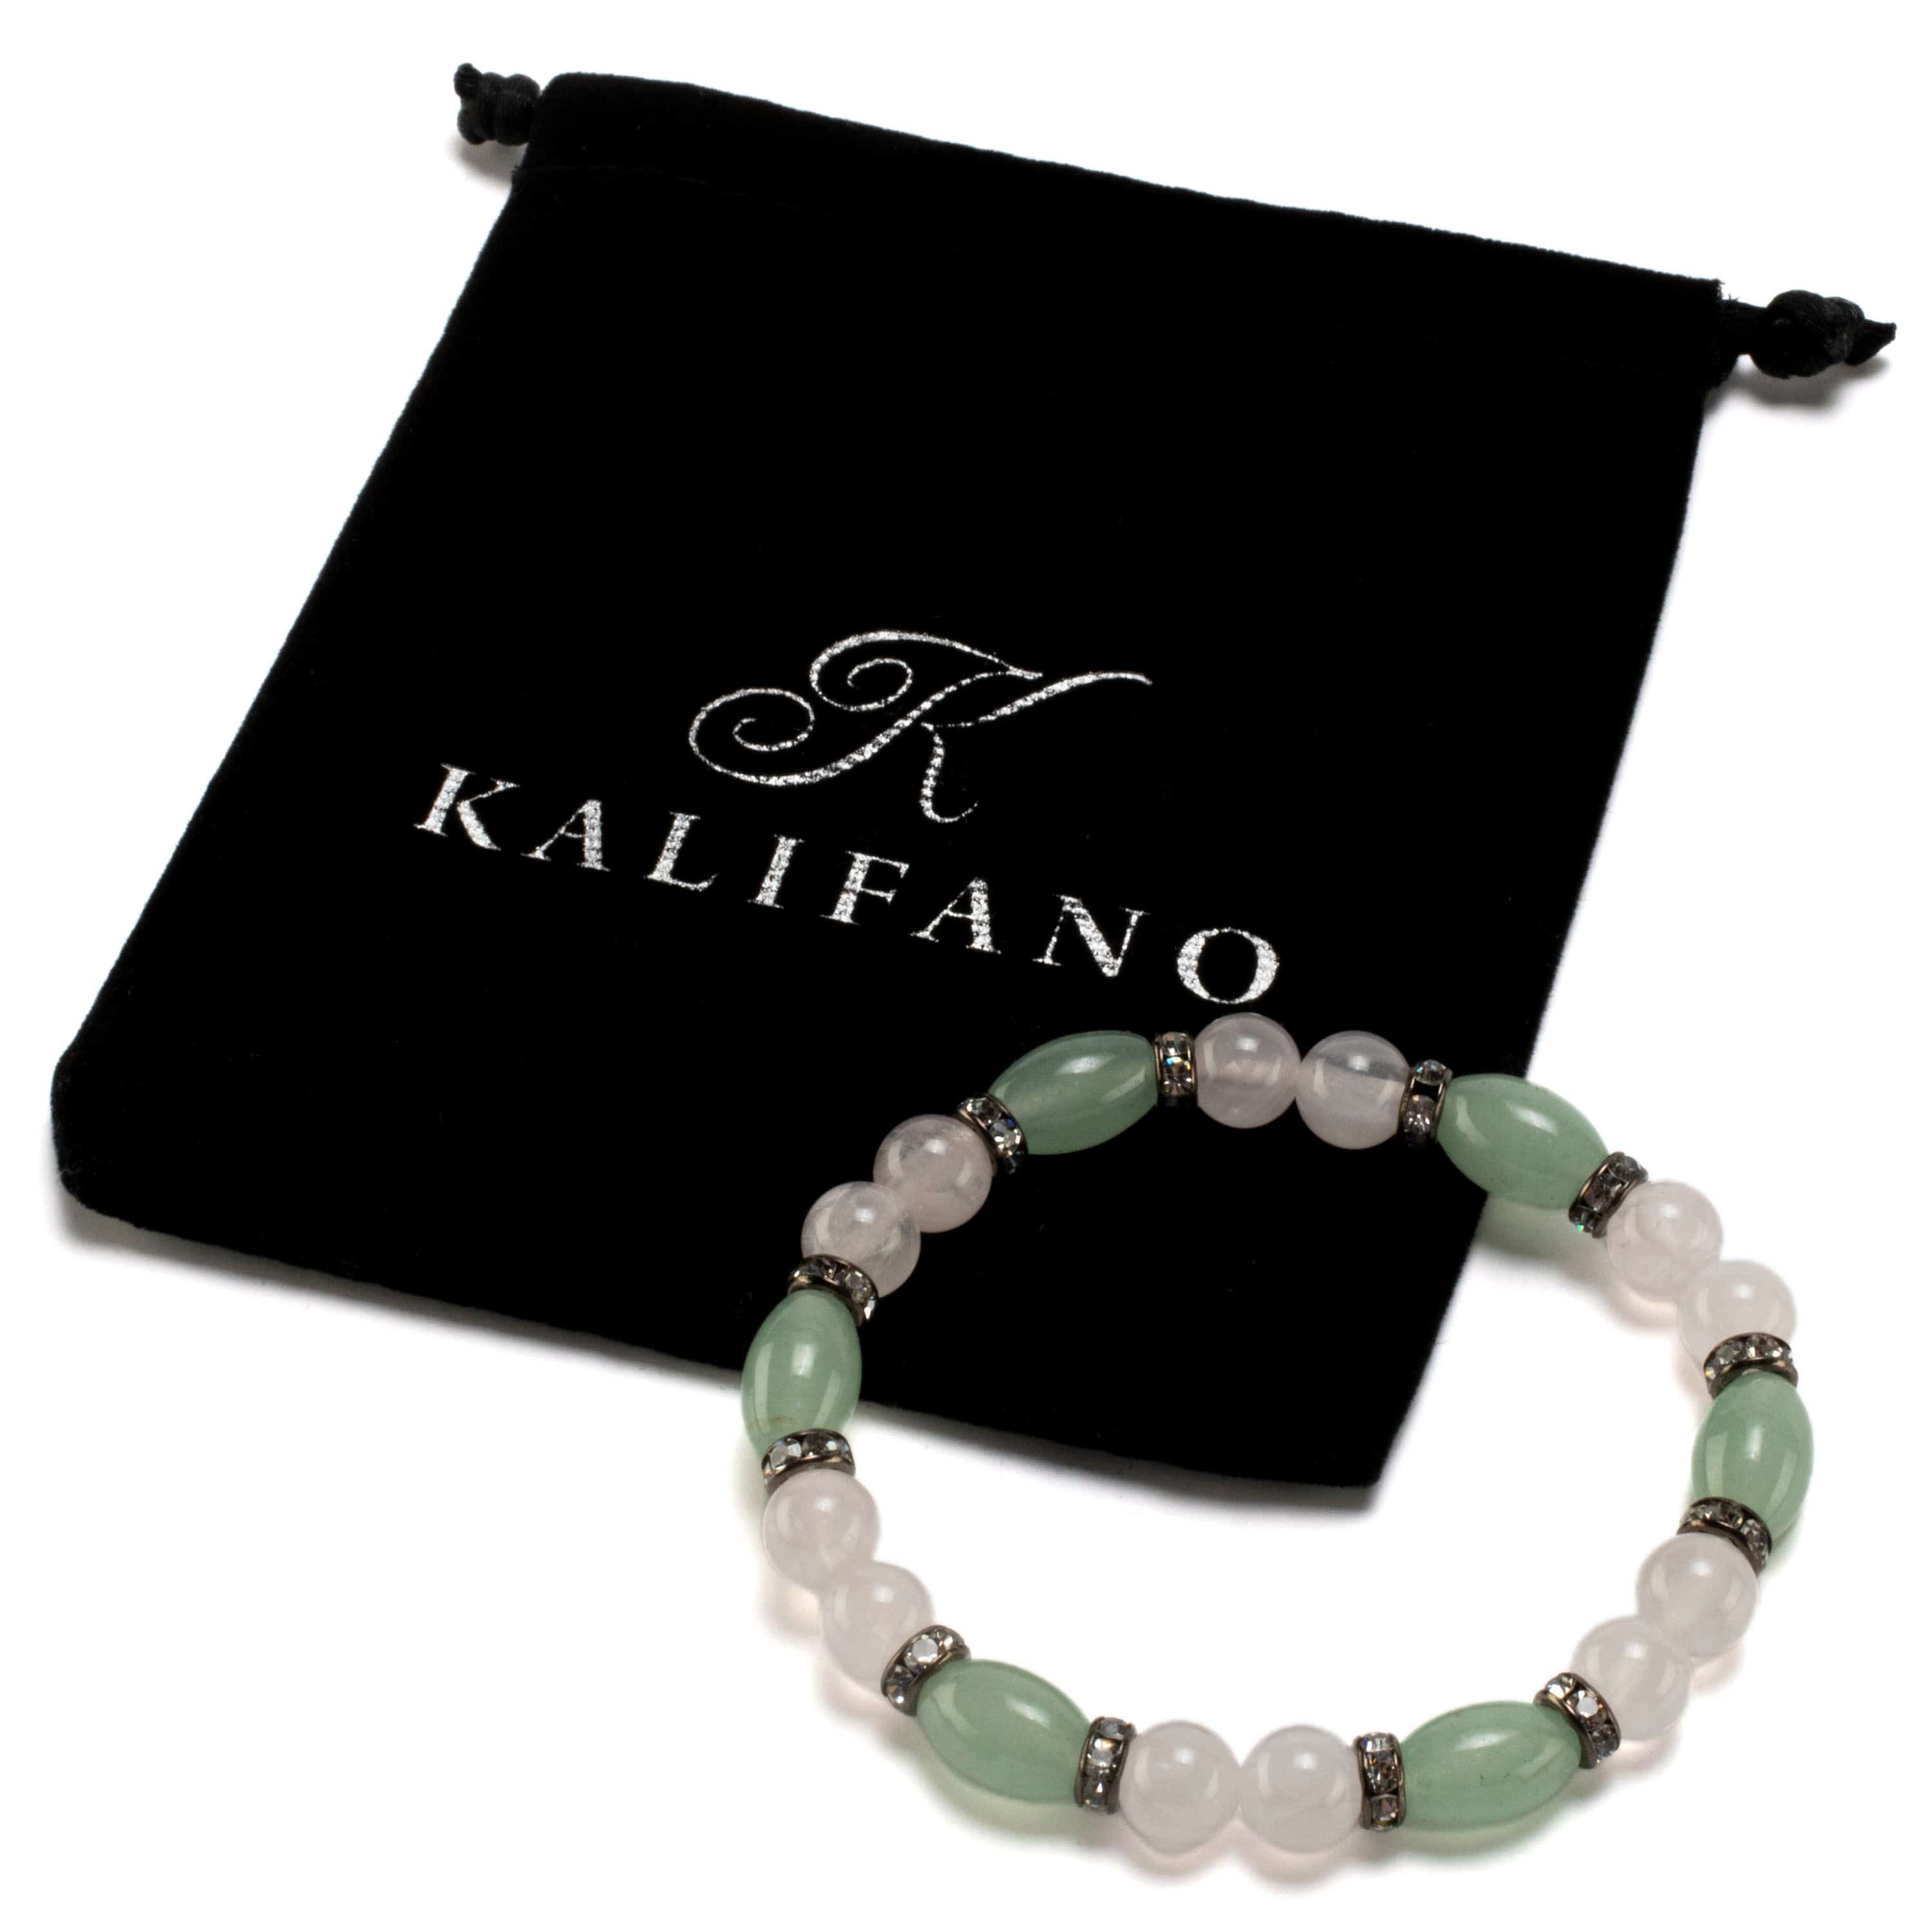 Kalifano Gemstone Bracelets Oval Aventurine and Round Rose Quartz with Crystal Accent Beads Gemstone Elastic Bracelet BLUE-BGP-031